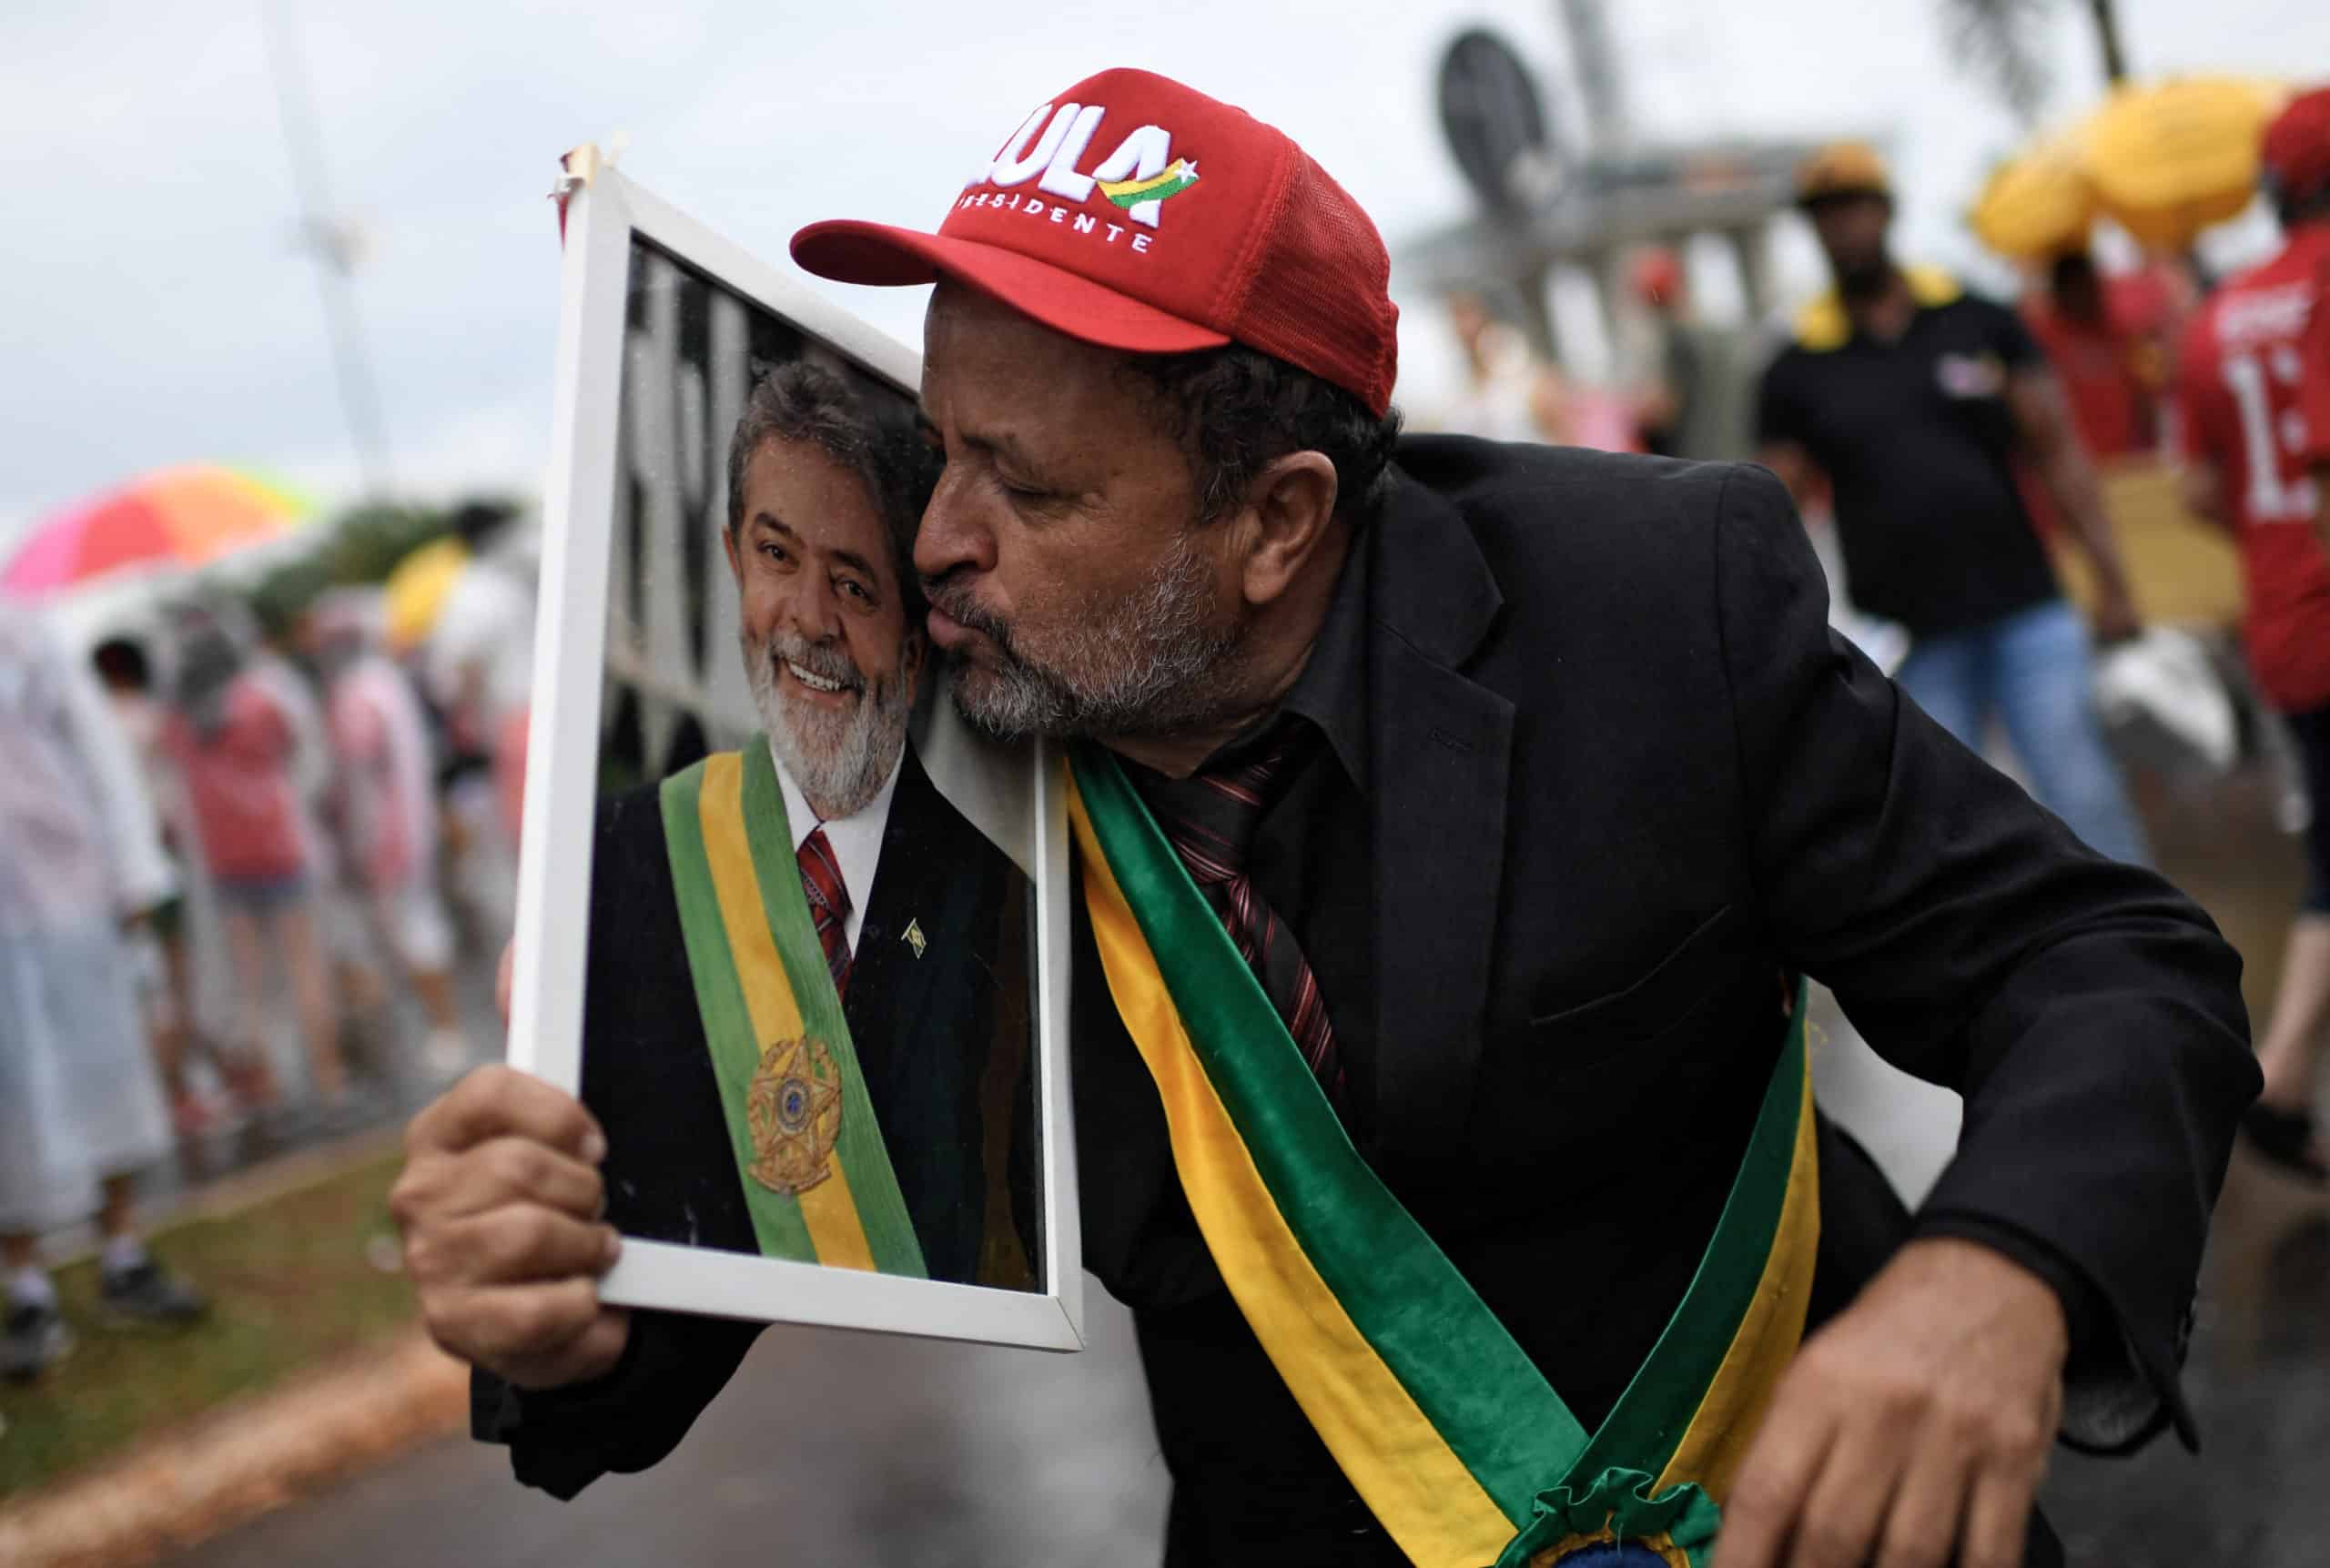 La izquierda vuelve al poder en Brasil de la mano de Lula, en mandato lleno de desafíos